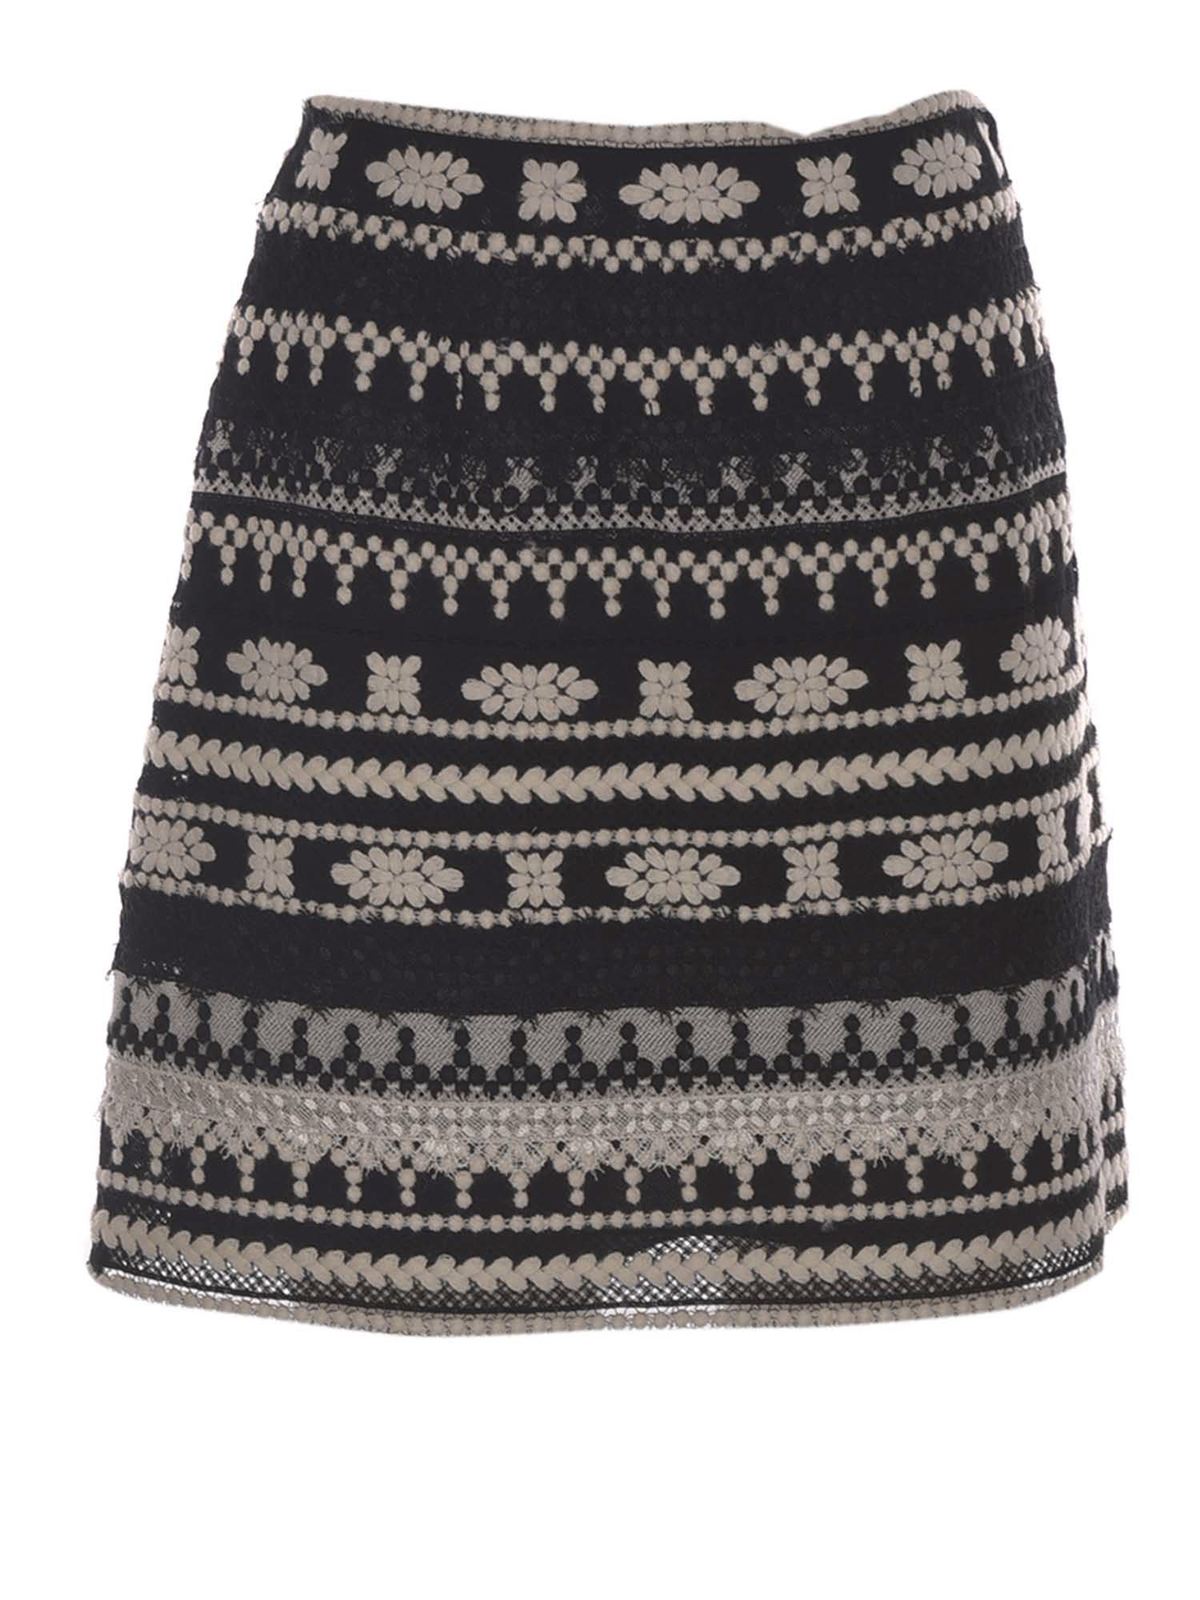 Ermanno Scervino Crochet Skirt In Black And White